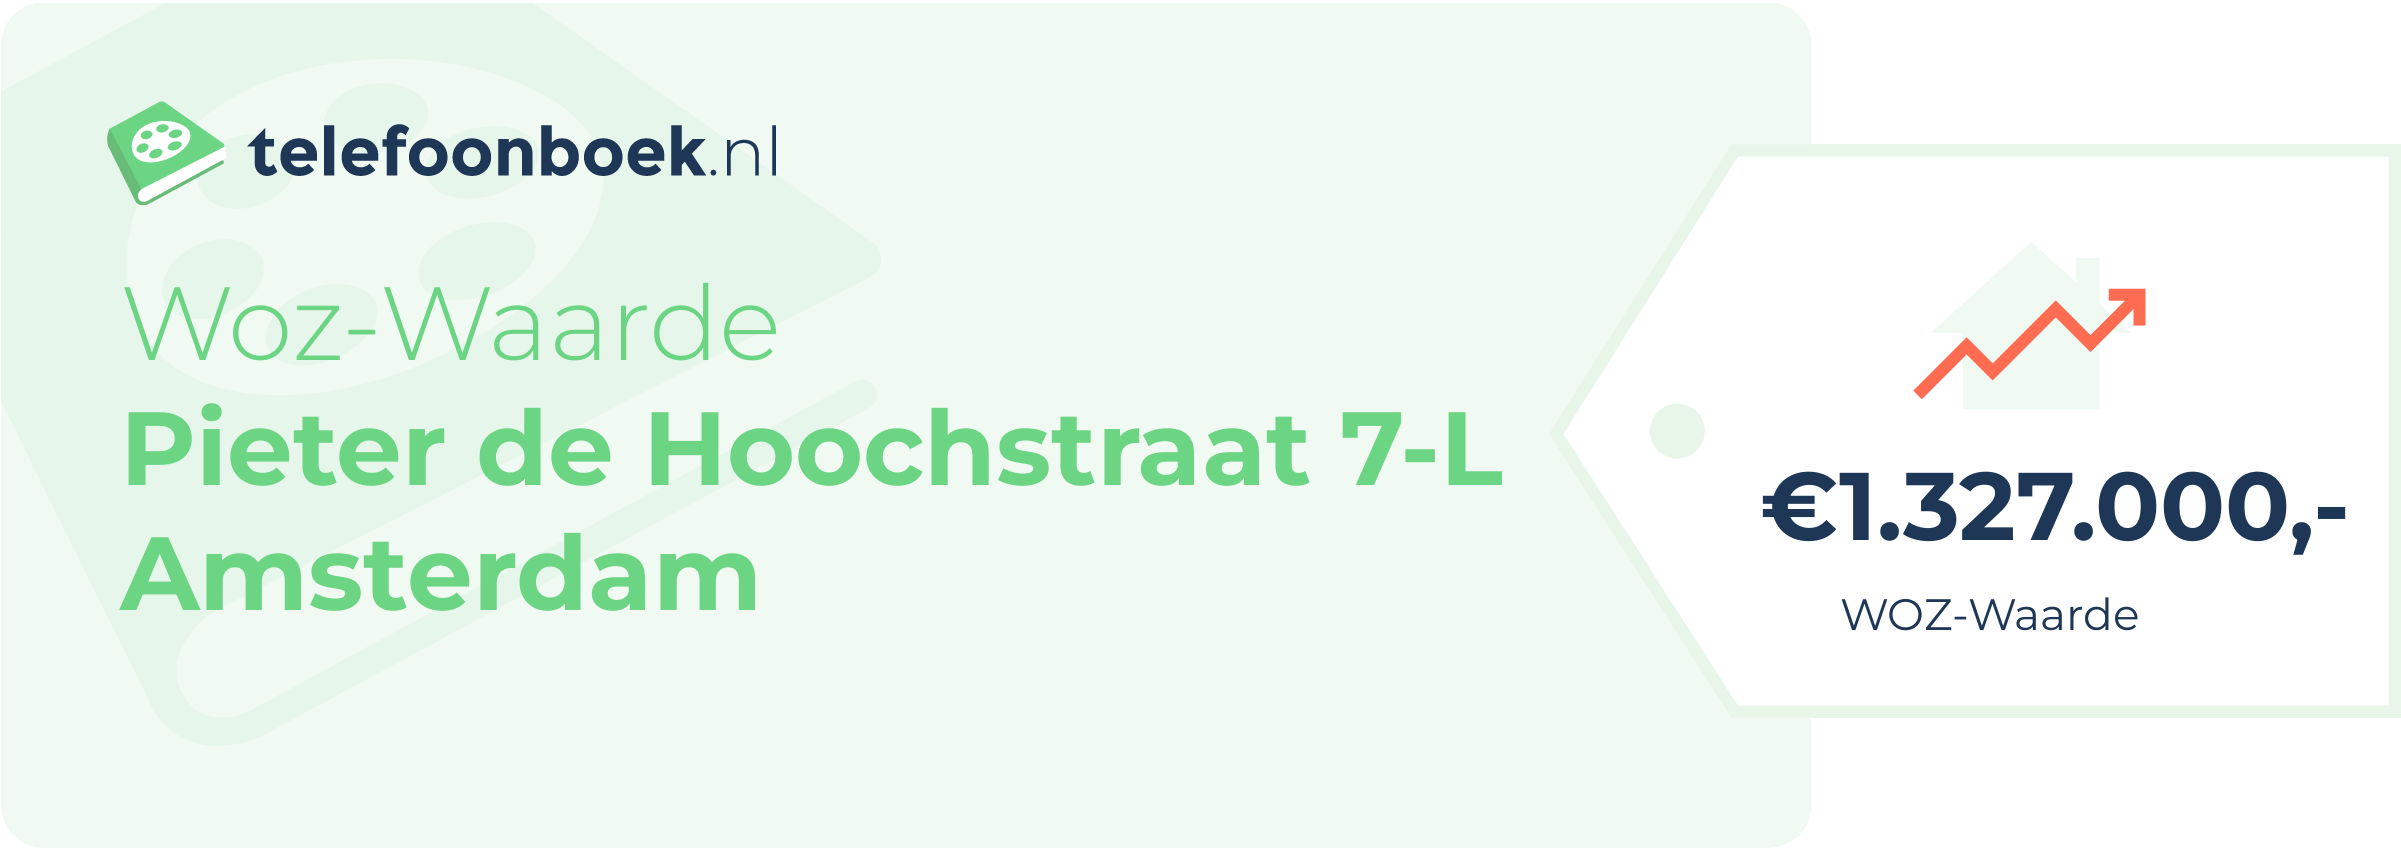 WOZ-waarde Pieter De Hoochstraat 7-L Amsterdam